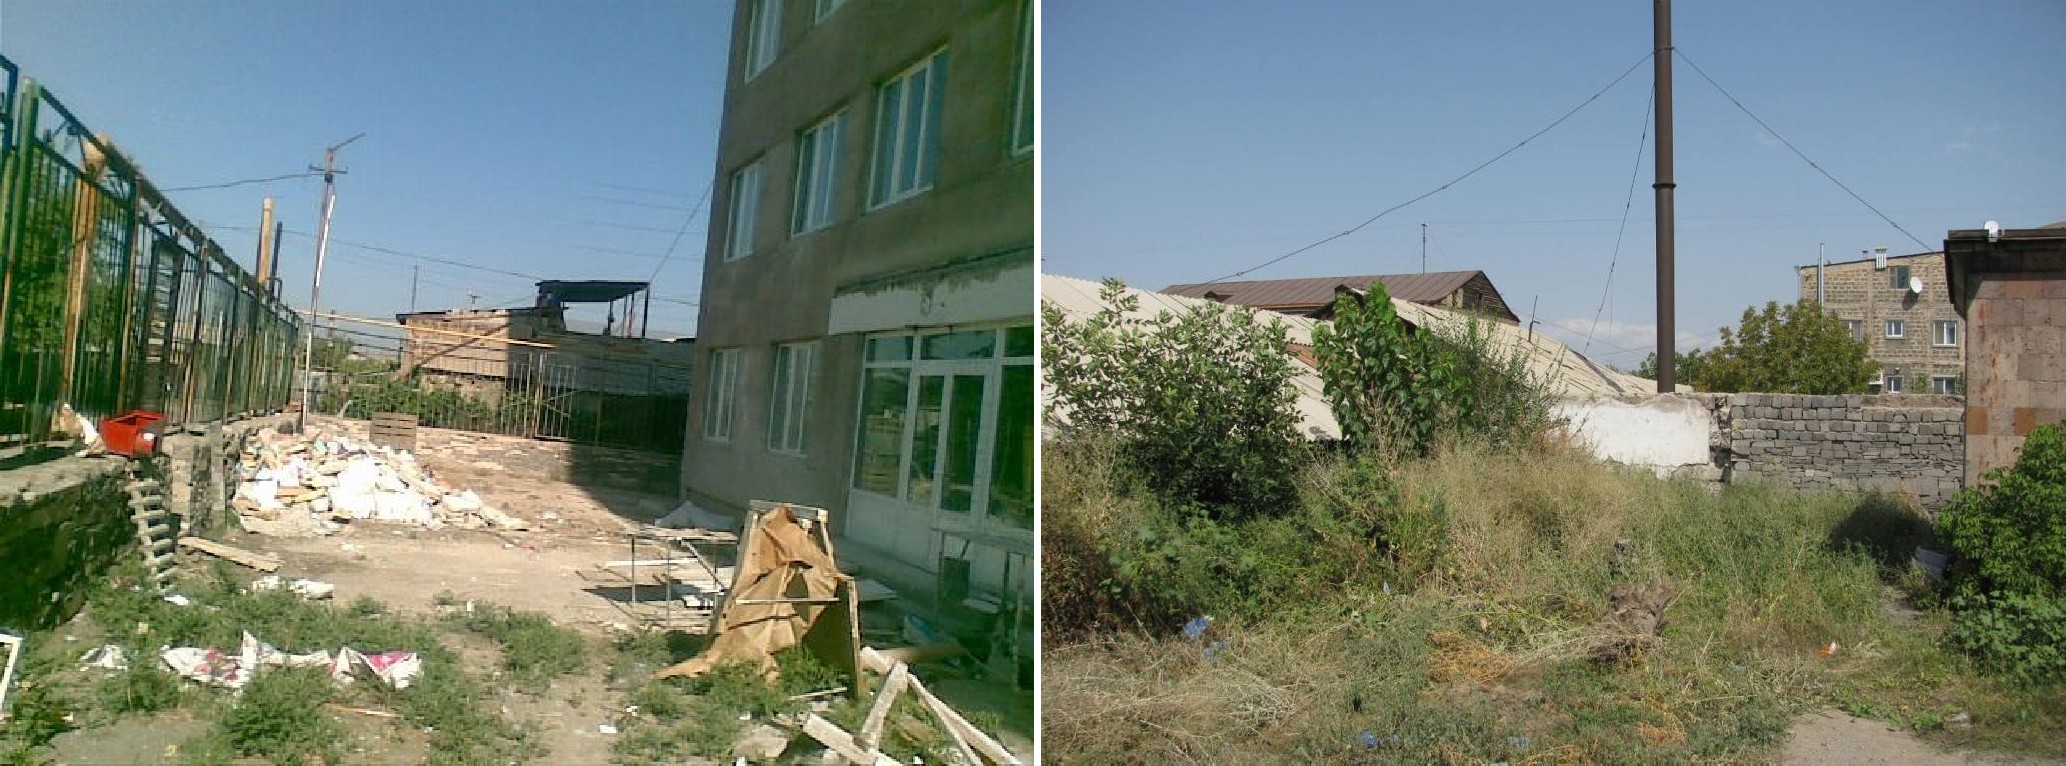 Состояние озеленения больничного комплекса “Мурацан” в 2007 г.